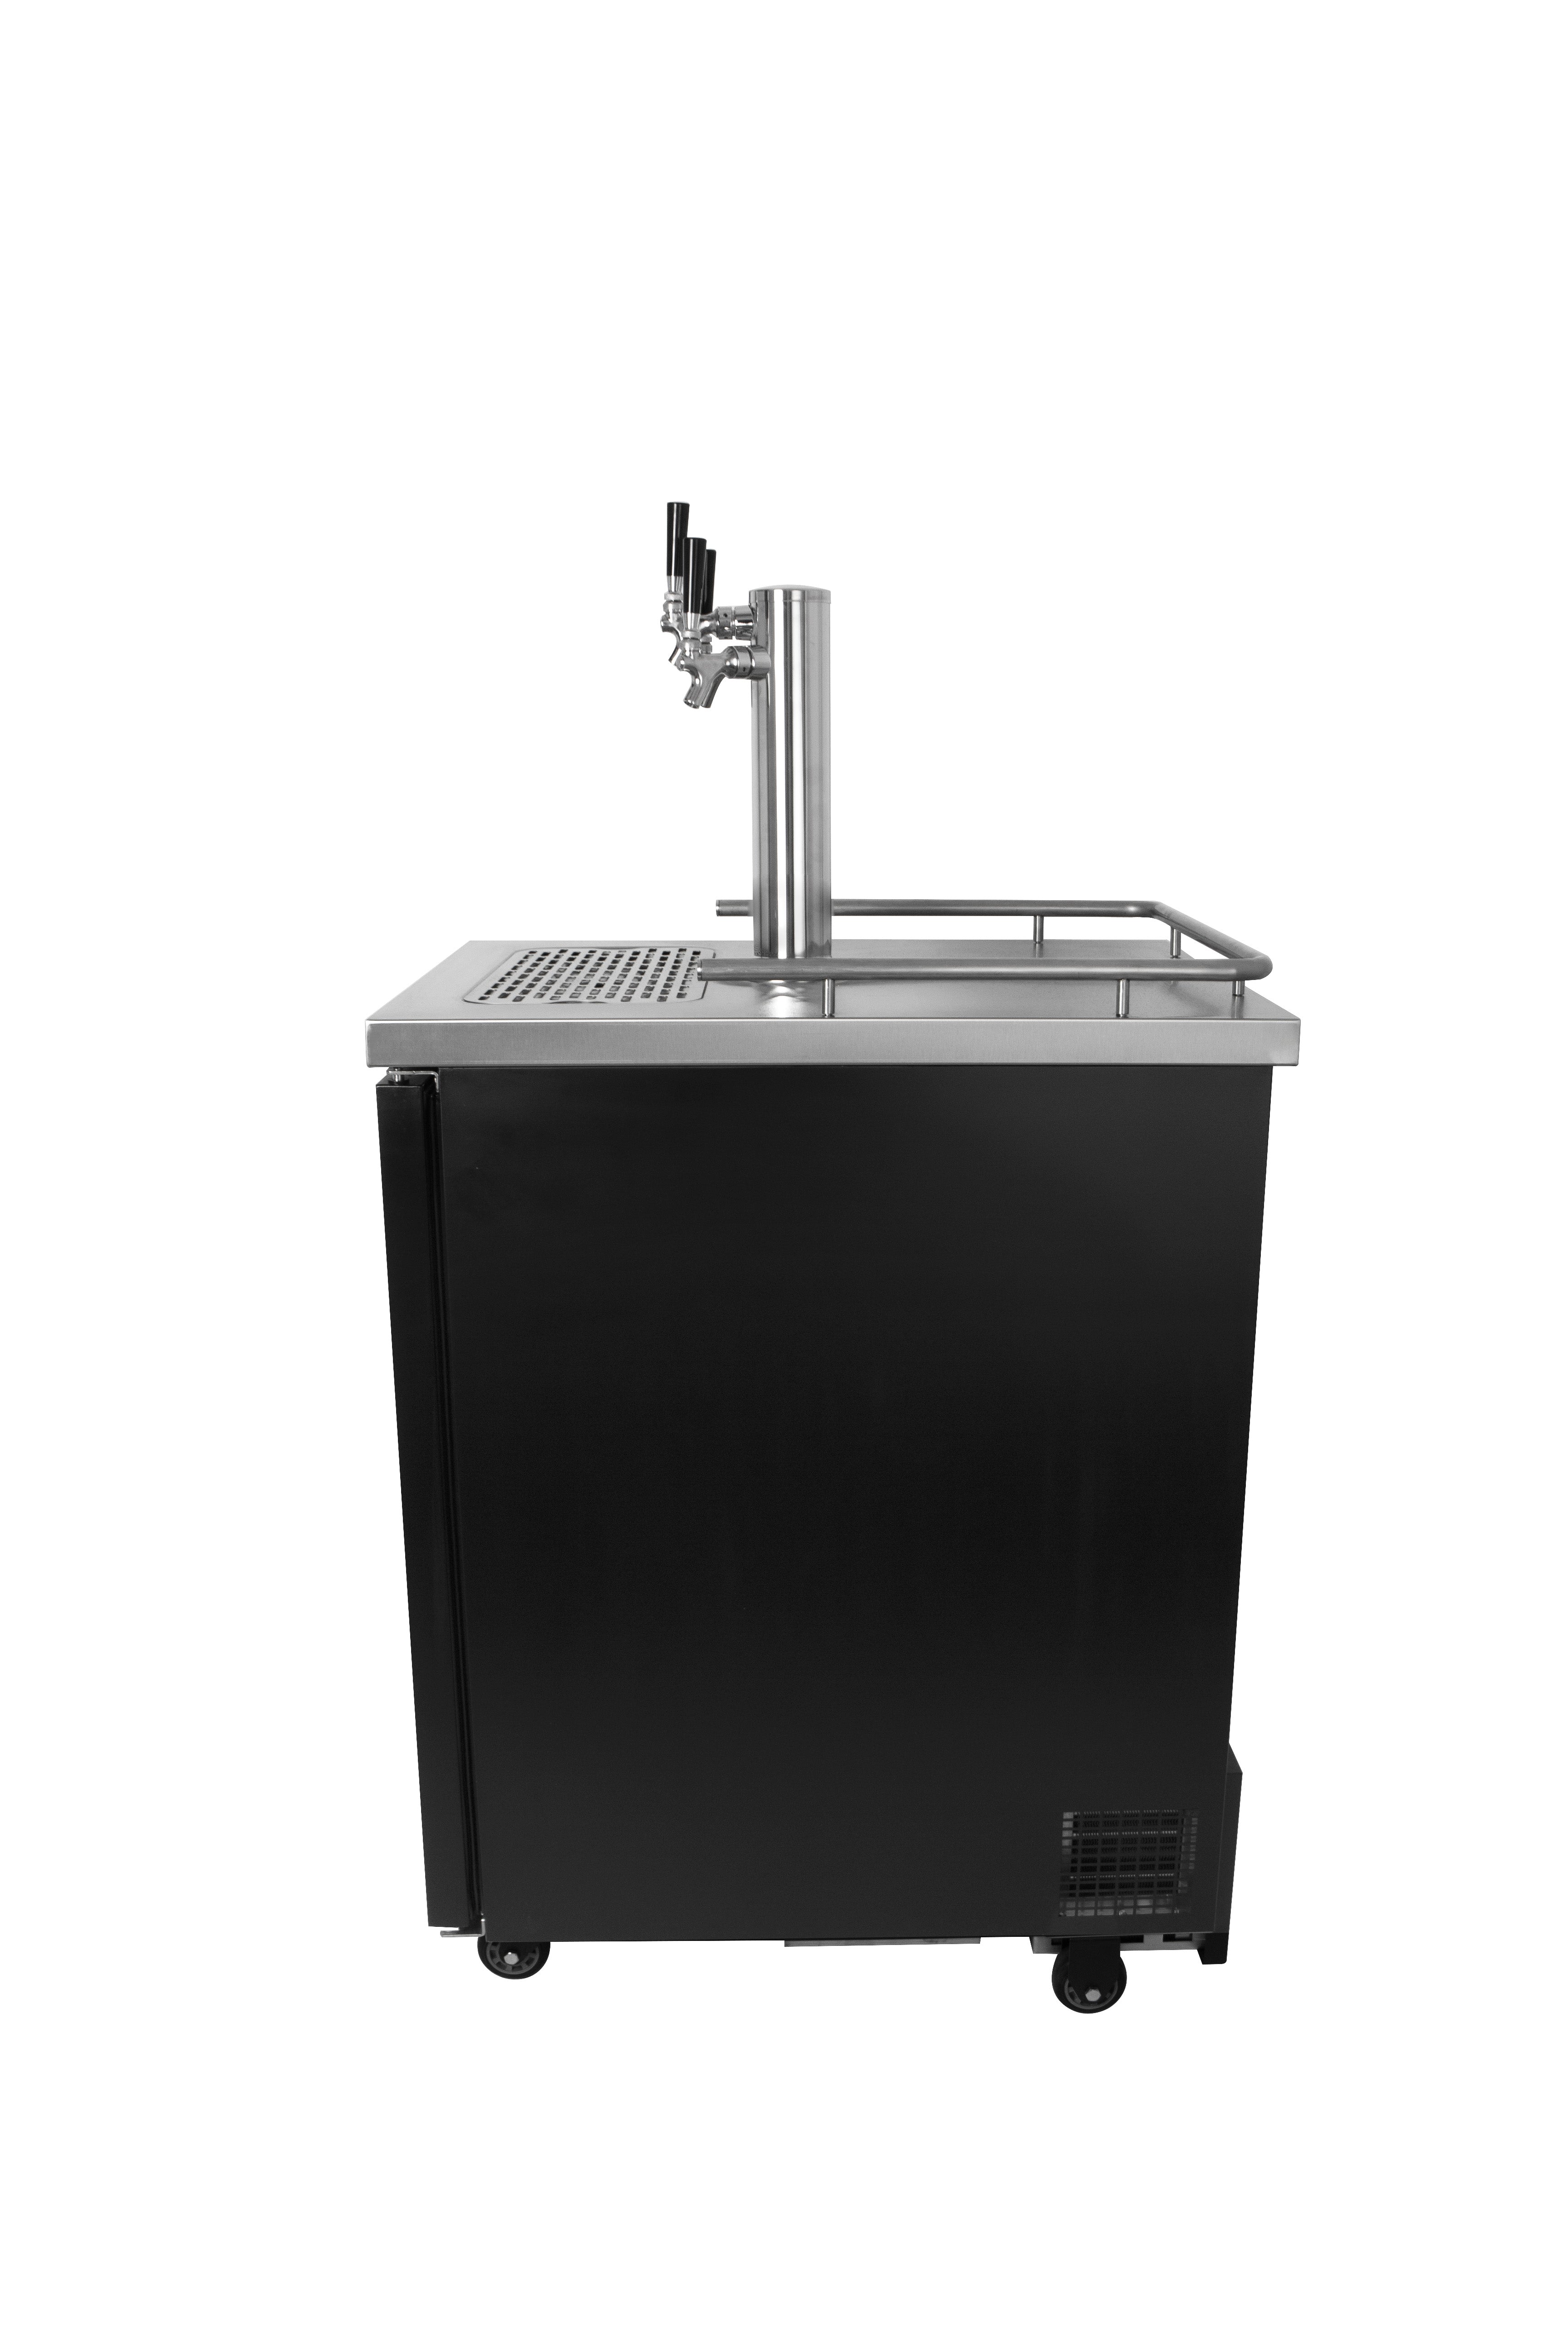 Kegco TCK-1B-3 Beer Dispenser | Restaurant Keg Cooler